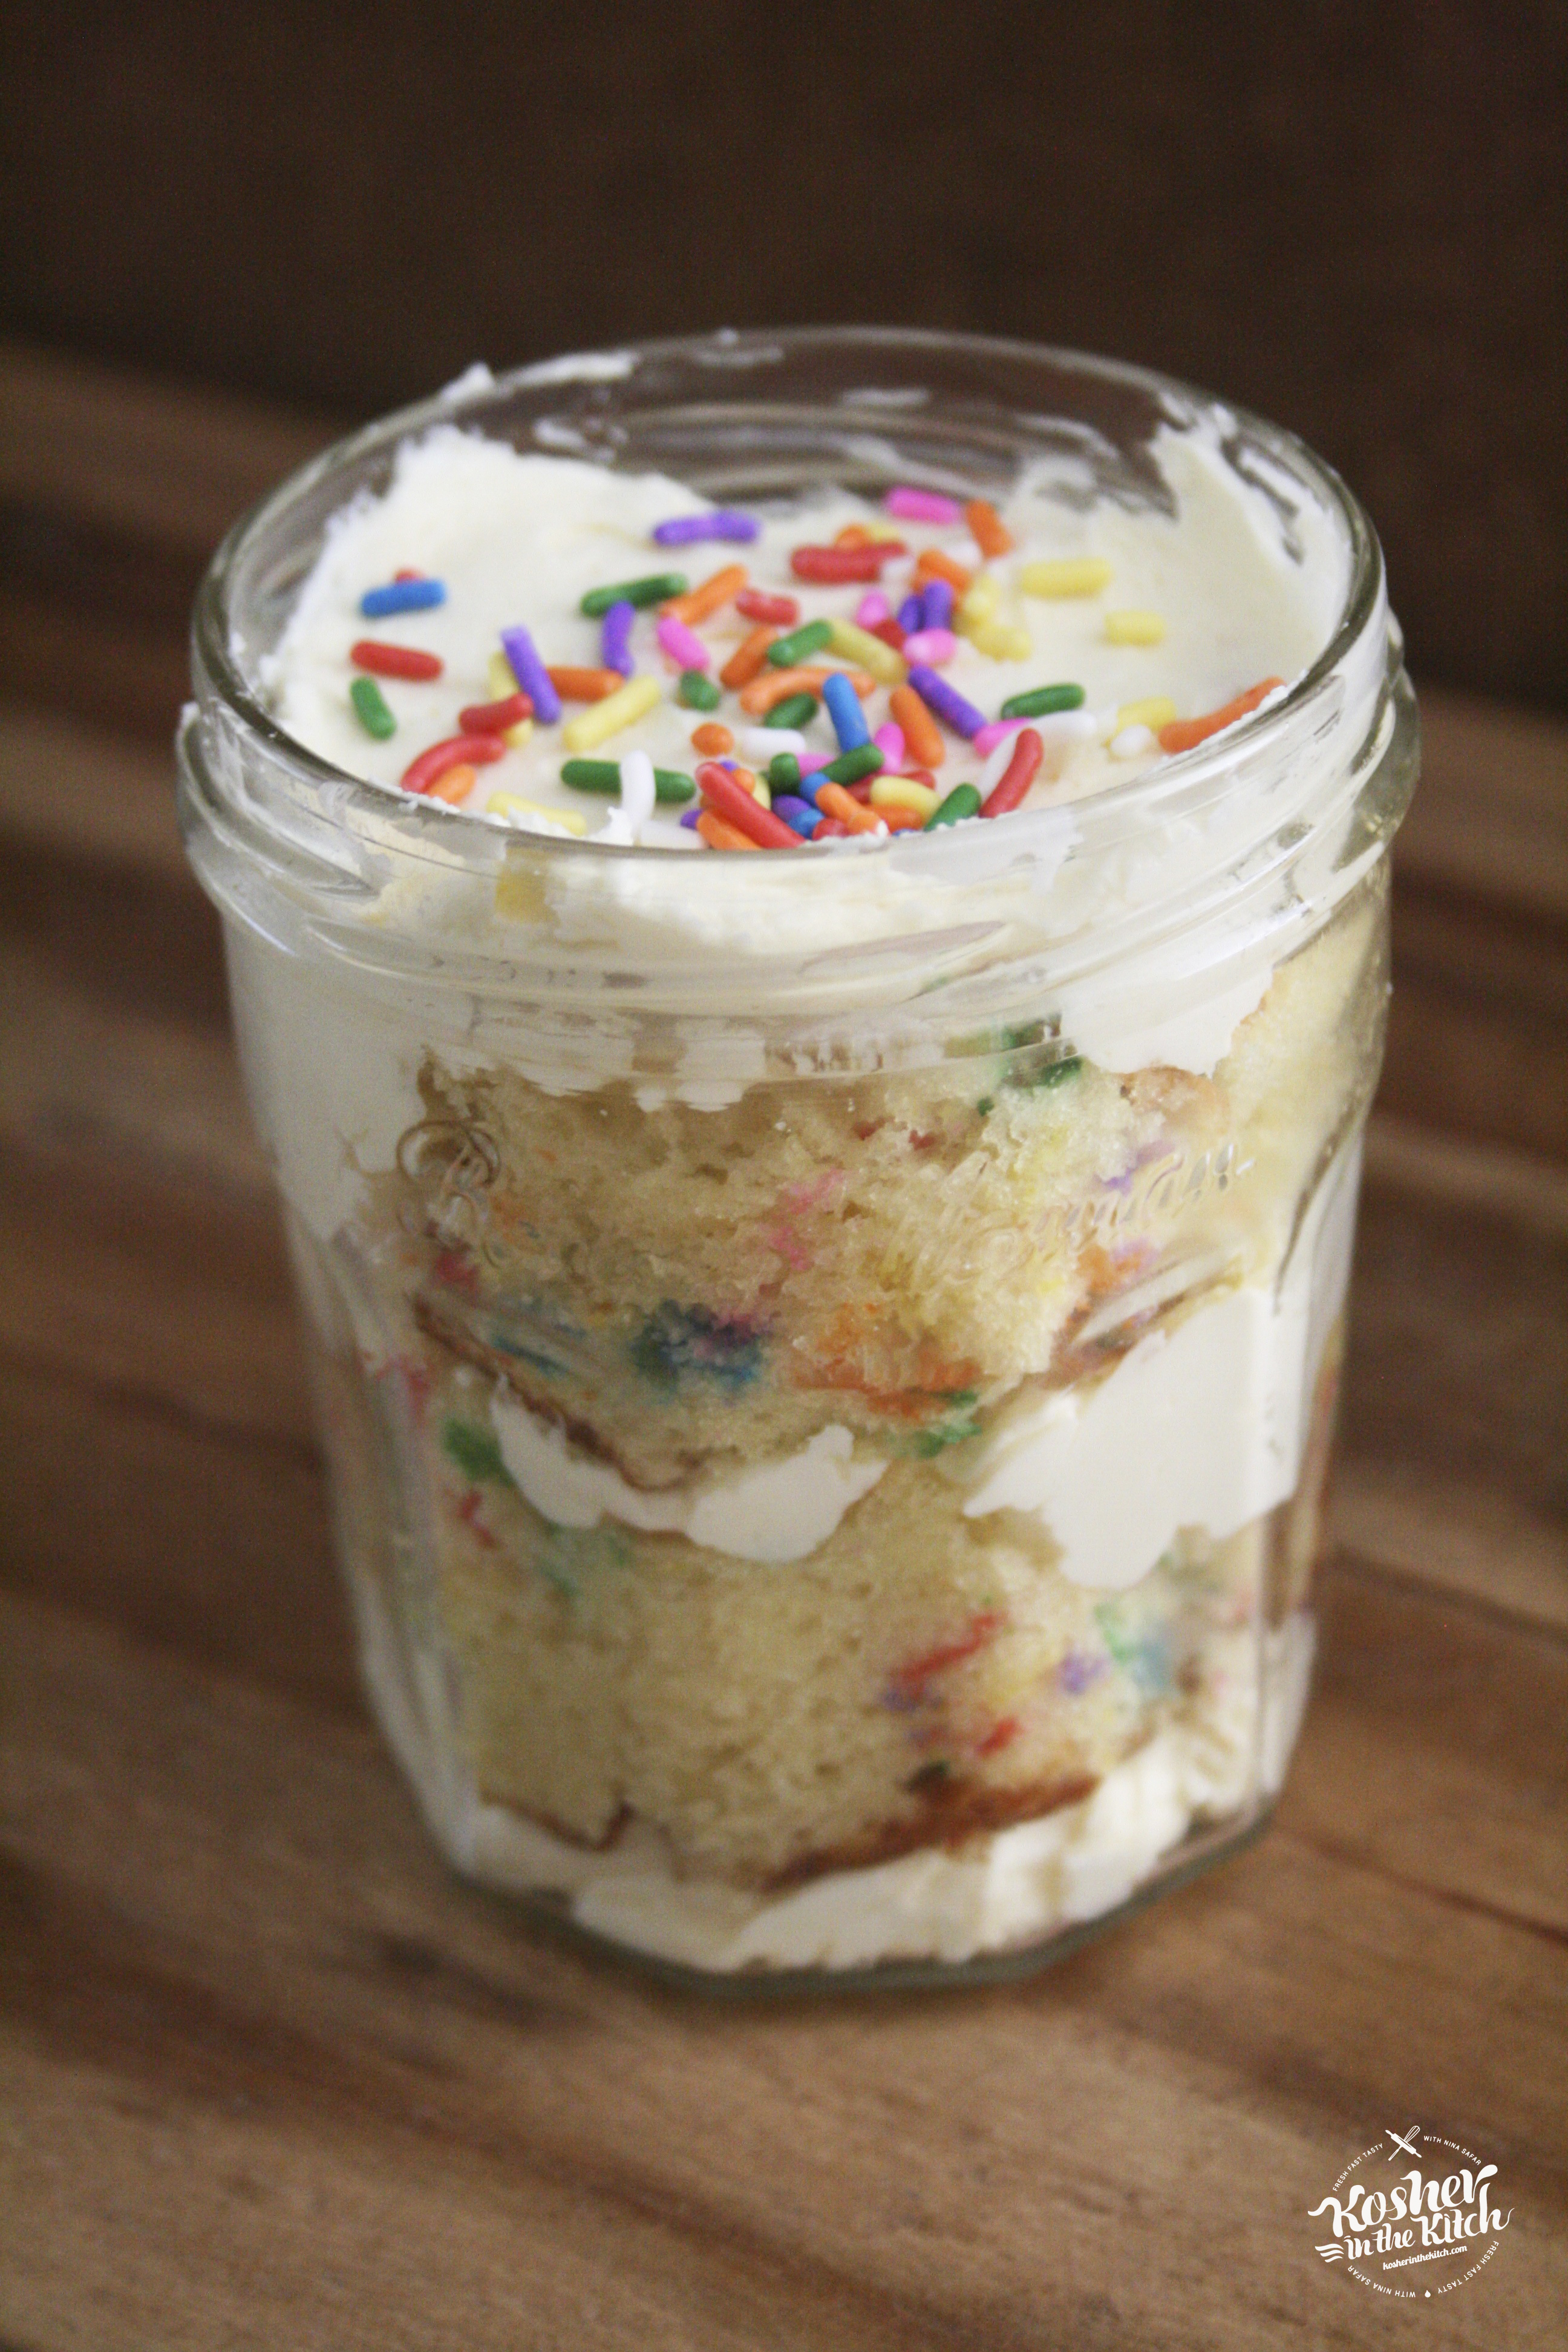 Funfetti Cake in a Jar